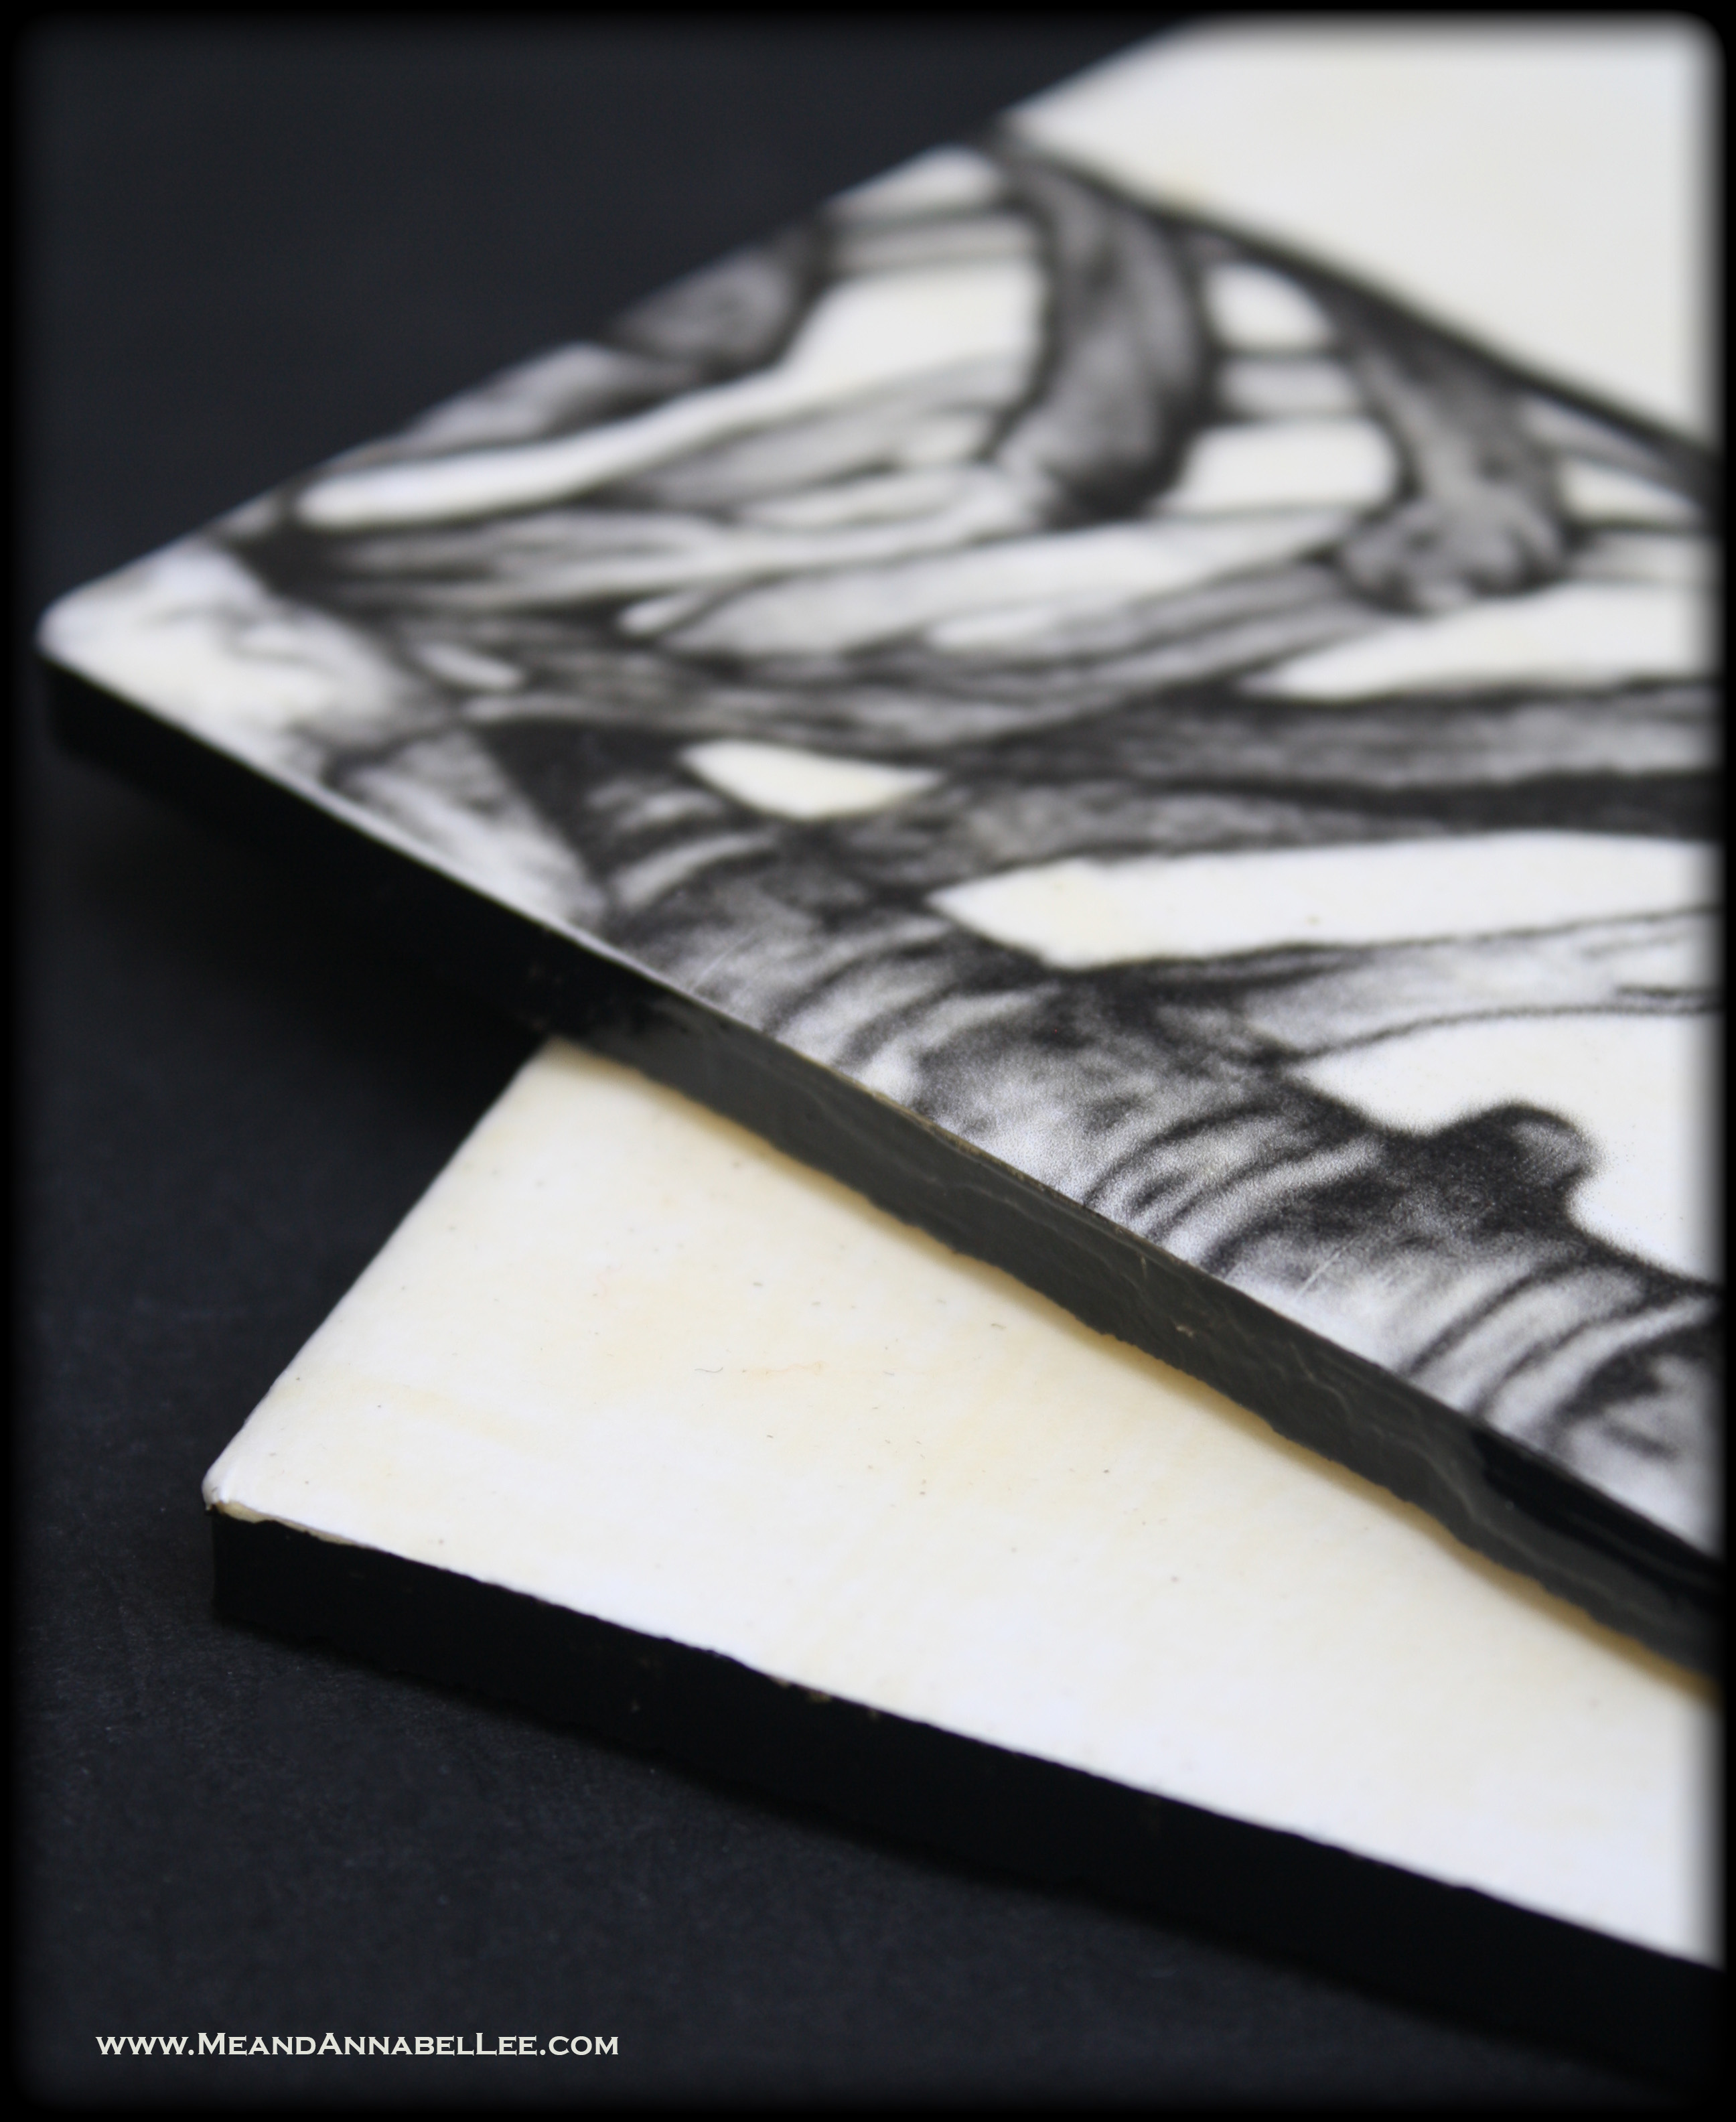 White Ceramic Tile Crafts | Anatomical Skeletal Torso Image Transfer Drink Coasters | www.MeandAnnabelLee.com 